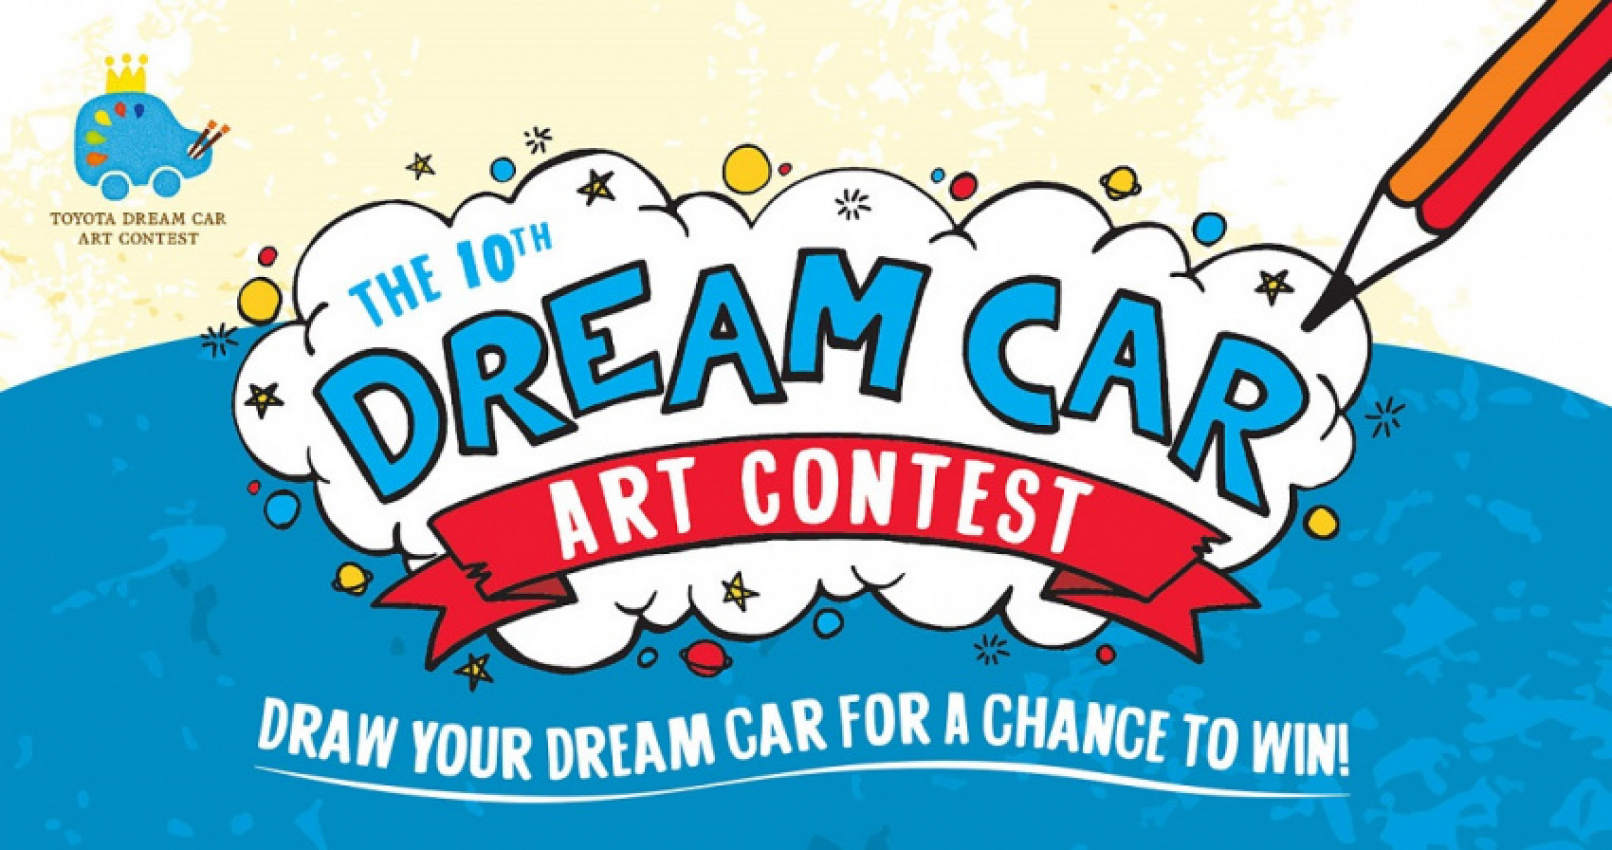 autos, car brands, cars, toyota, umw toyota motor, umwt, winners of 2016 toyota dream car art contest (malaysia) named